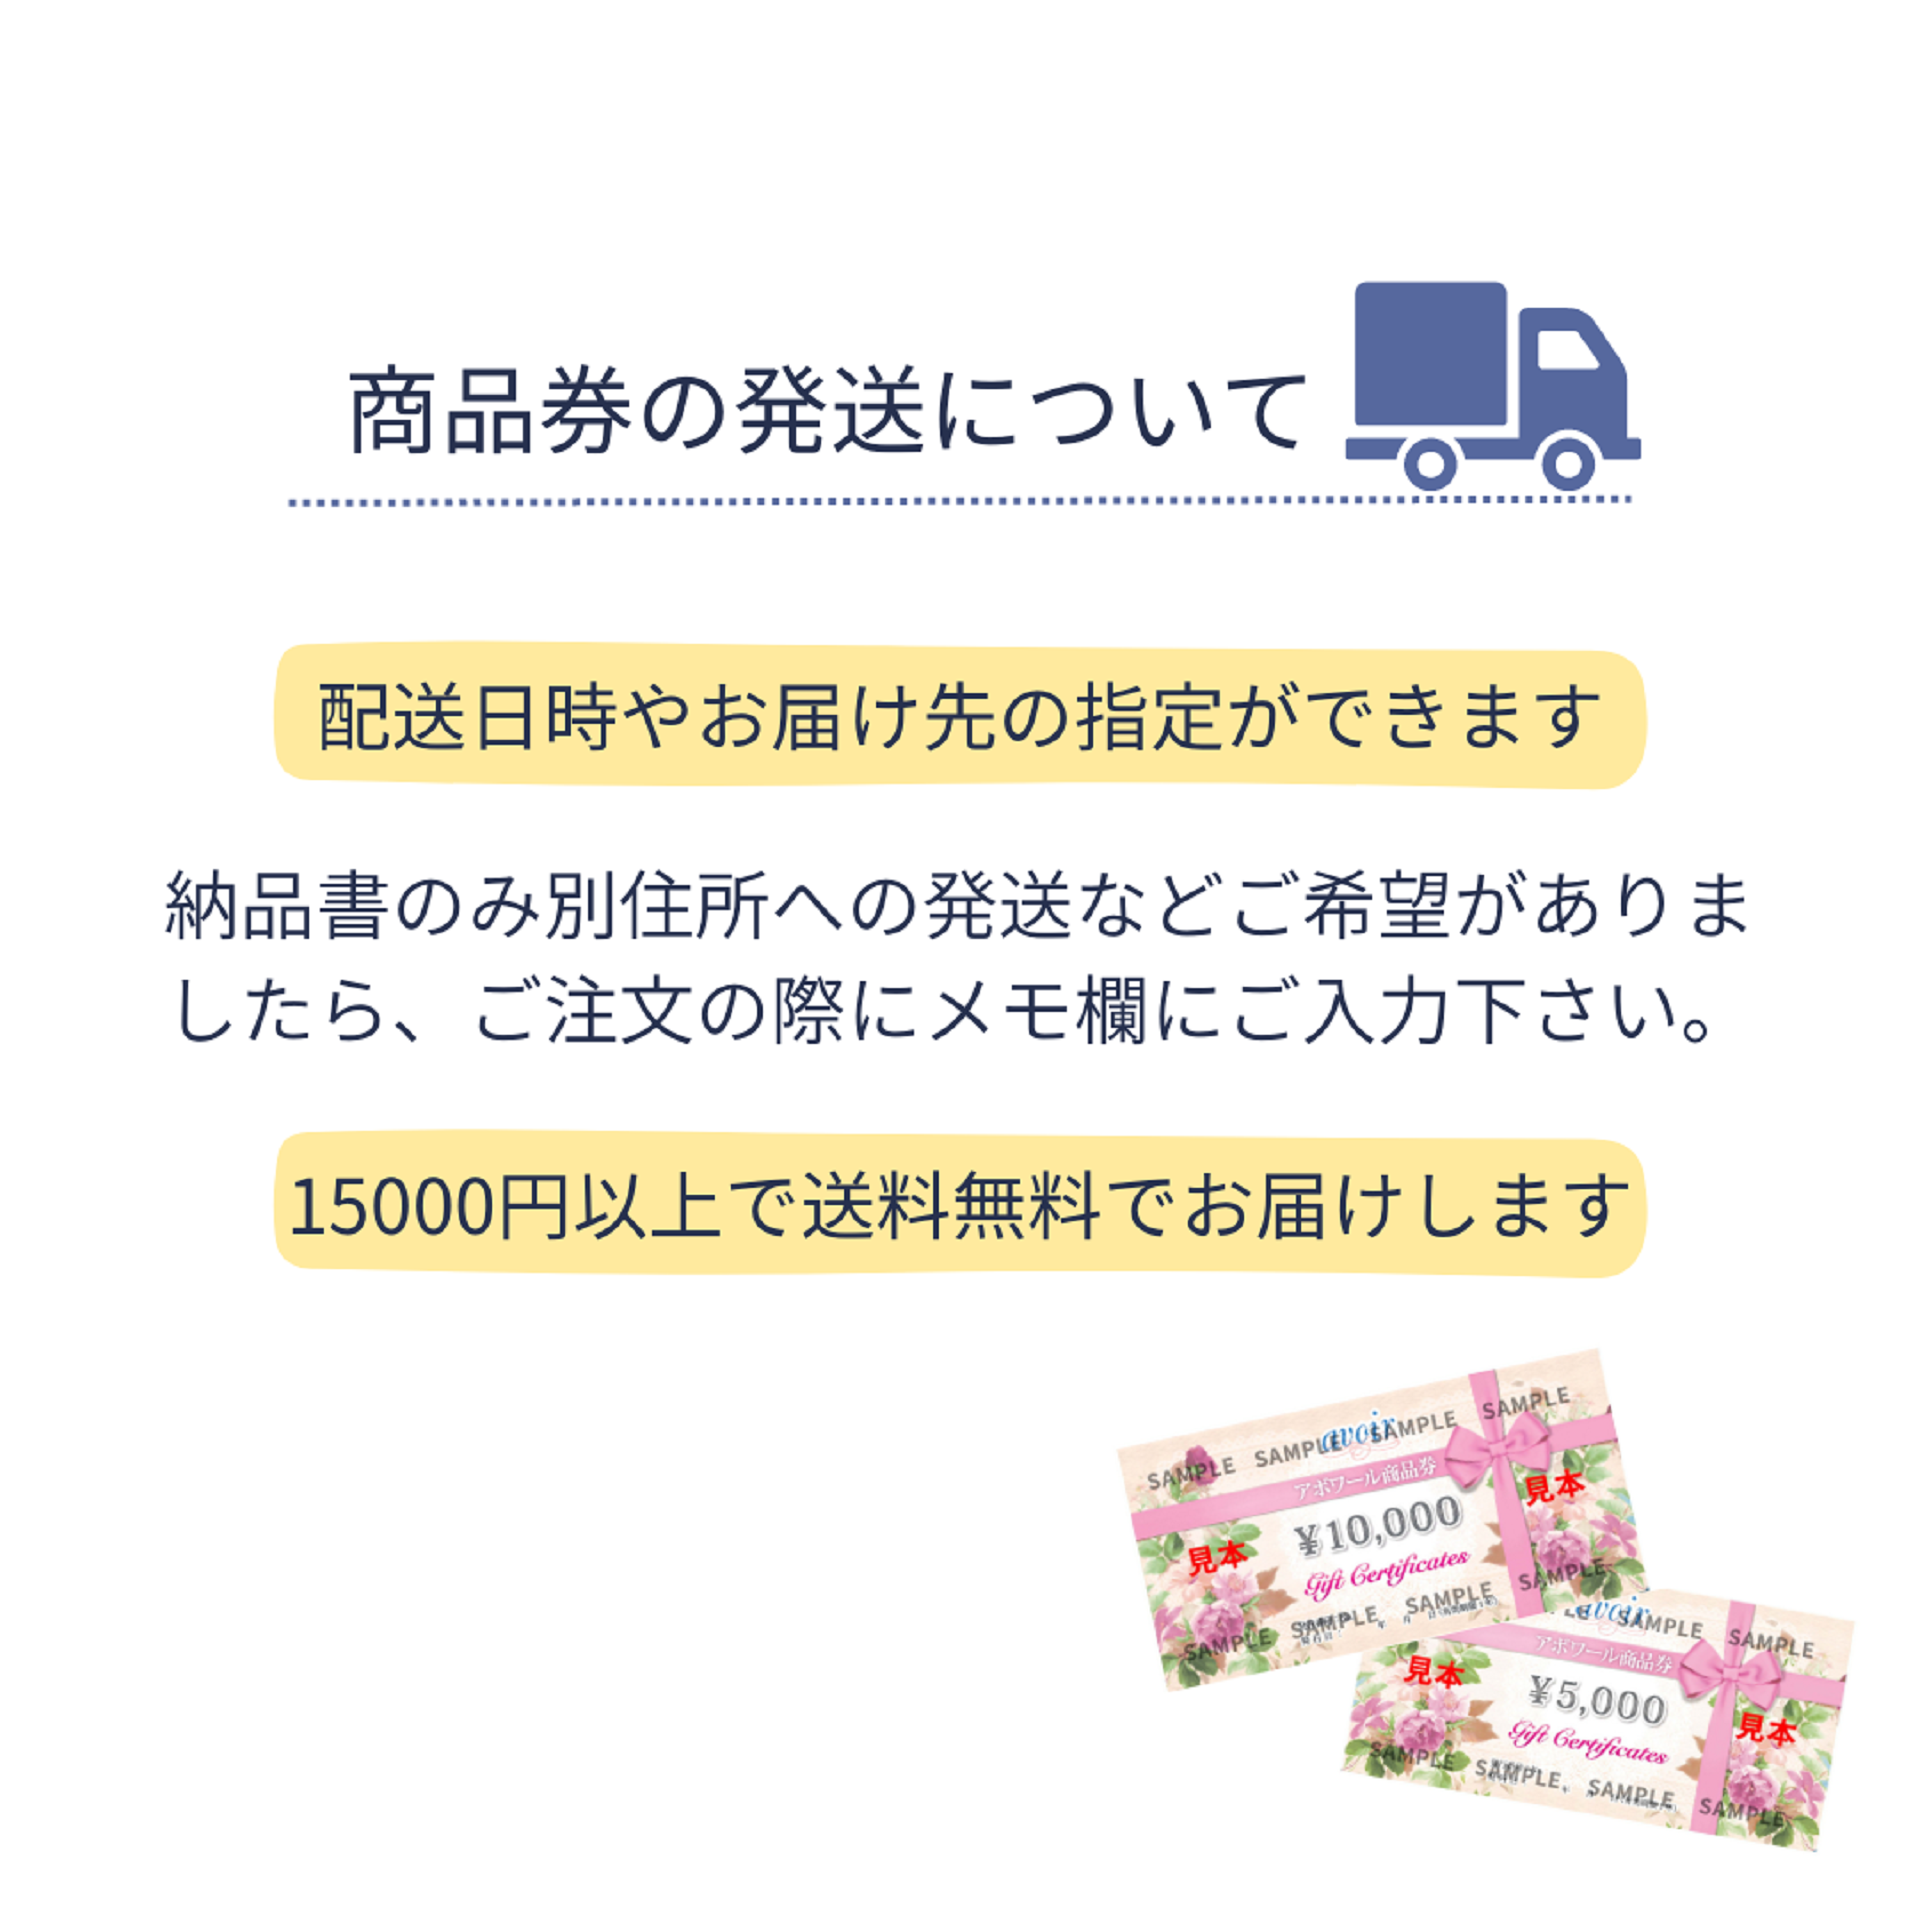 アボワール 3,000円商品券